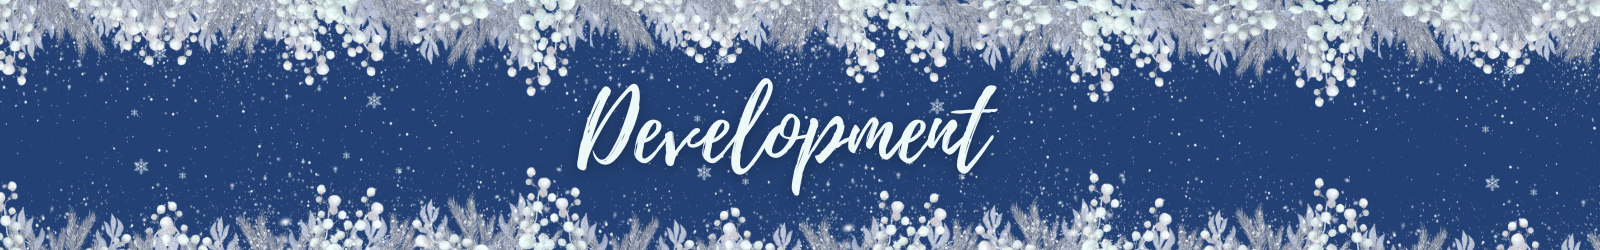 Development - December Leadership Development Carnival Divider